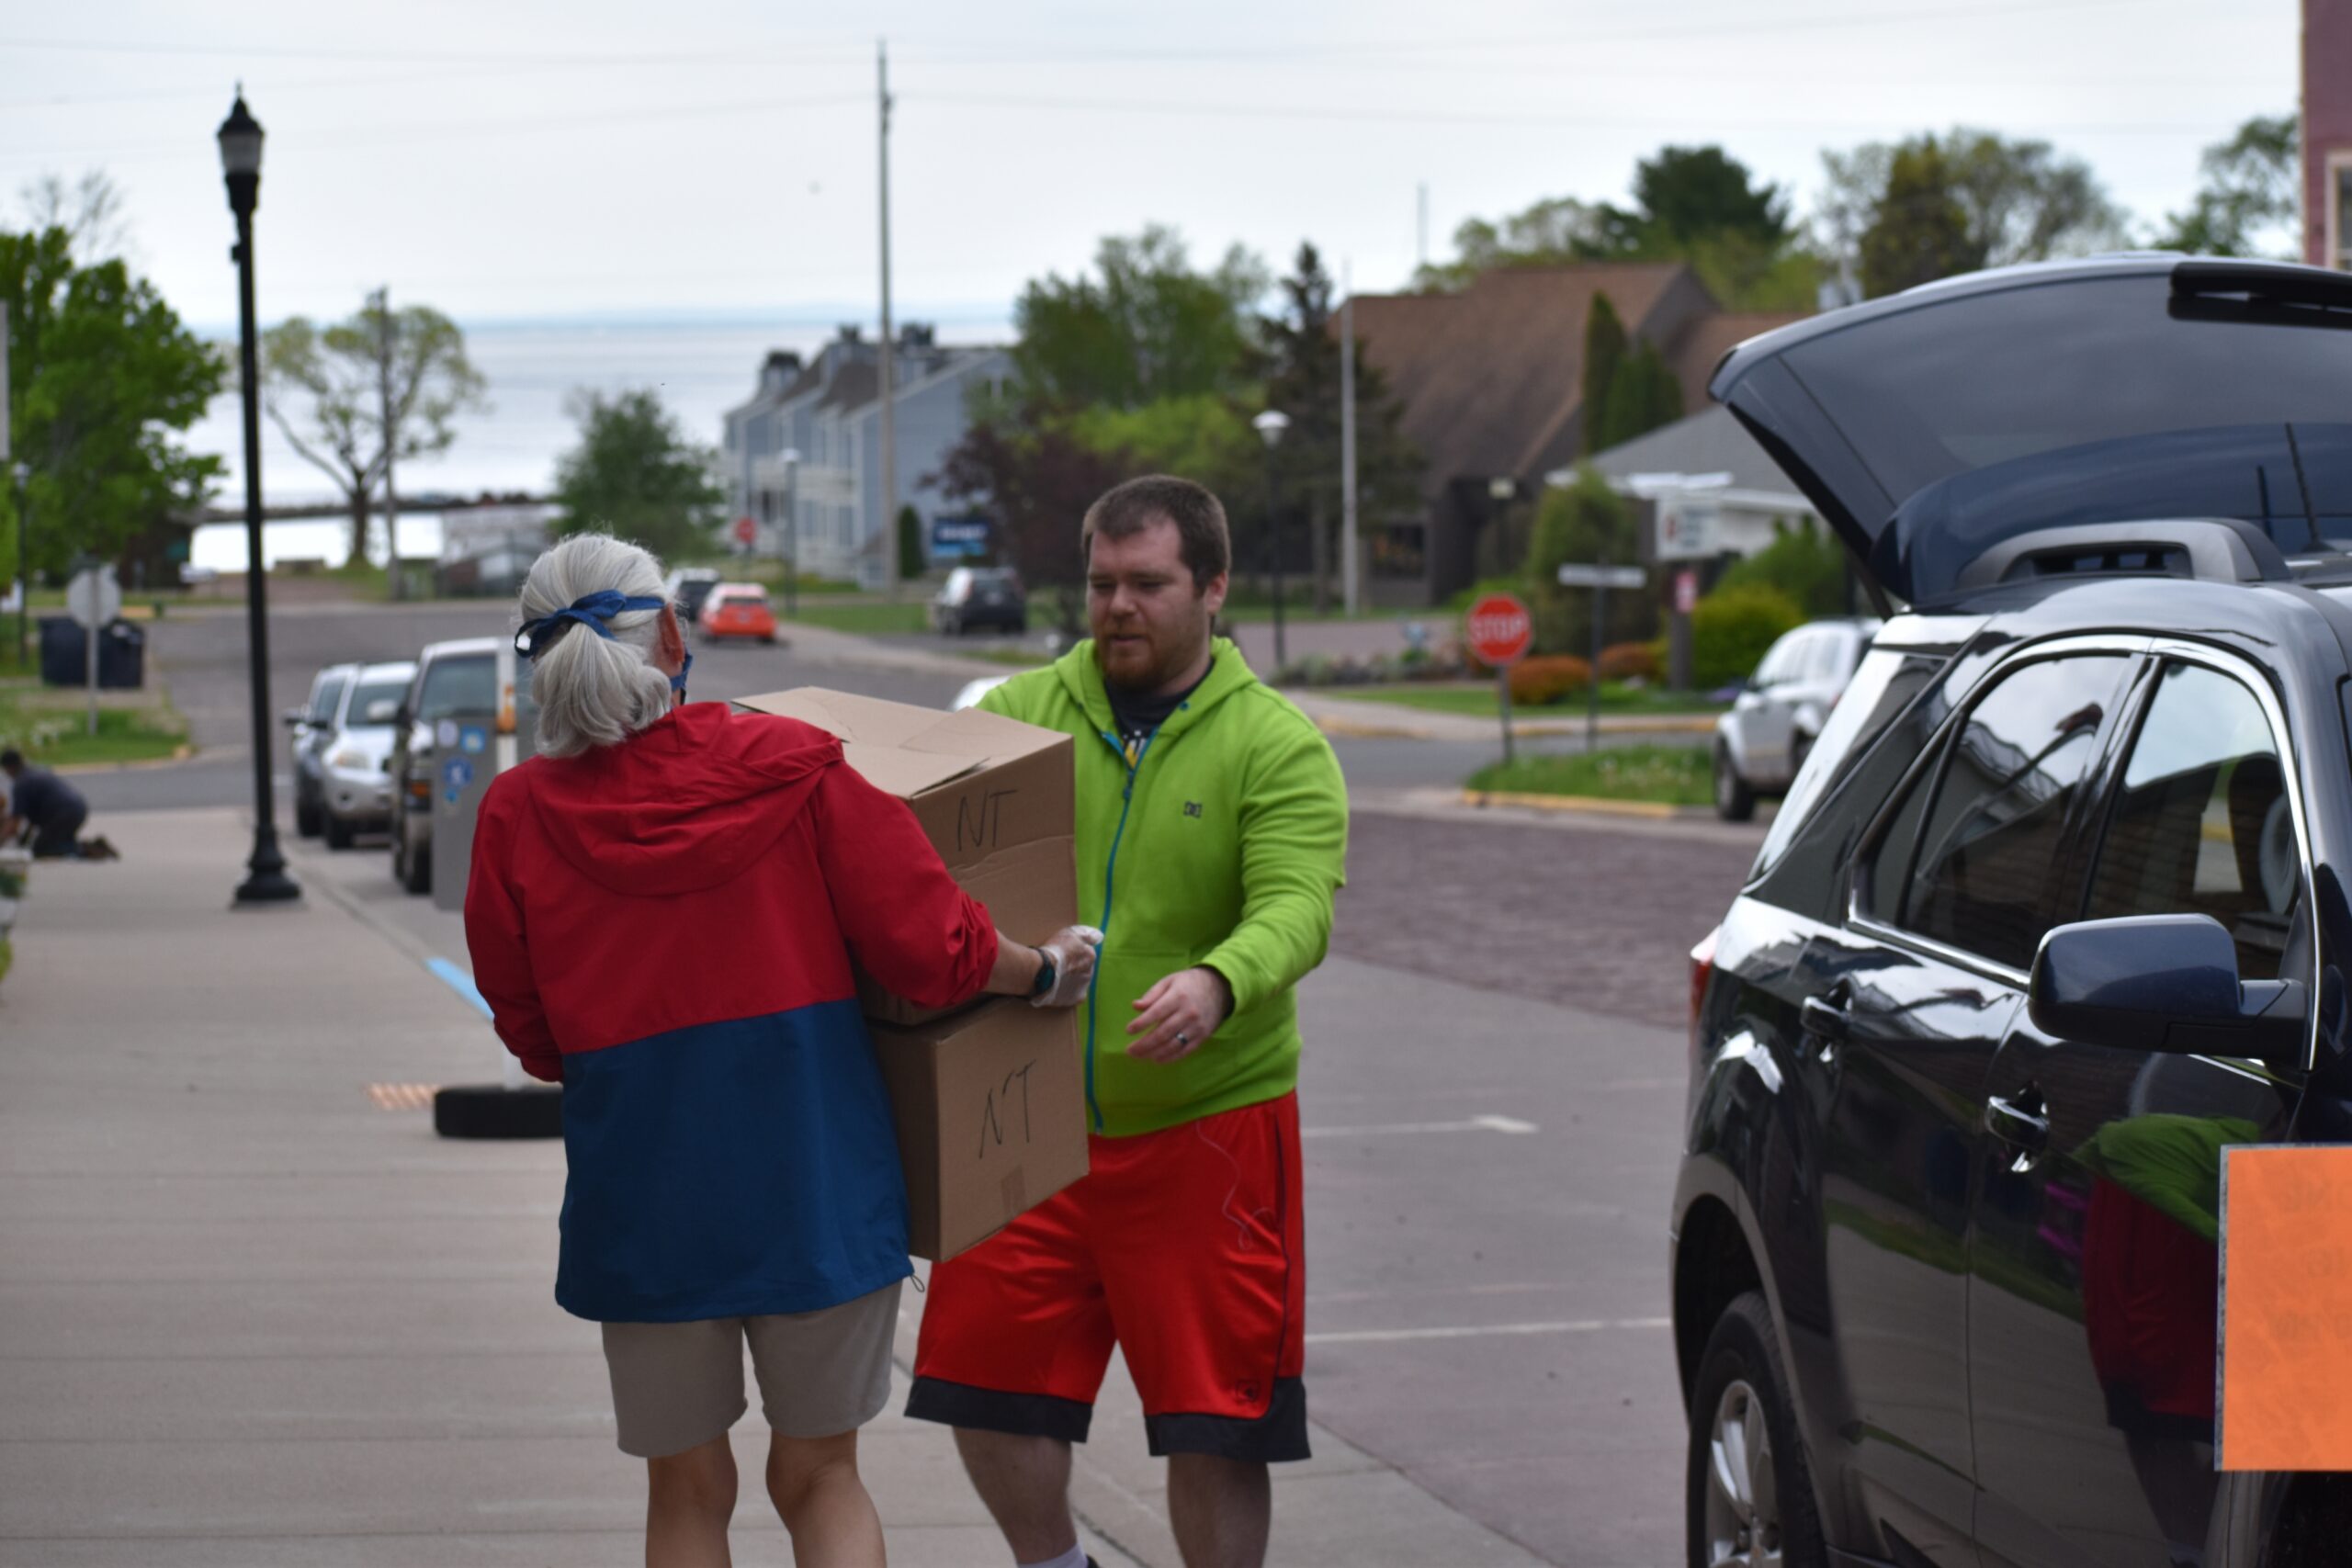 Volunteer Lisa Luttinen helps bring food boxes to Charles DeFoe